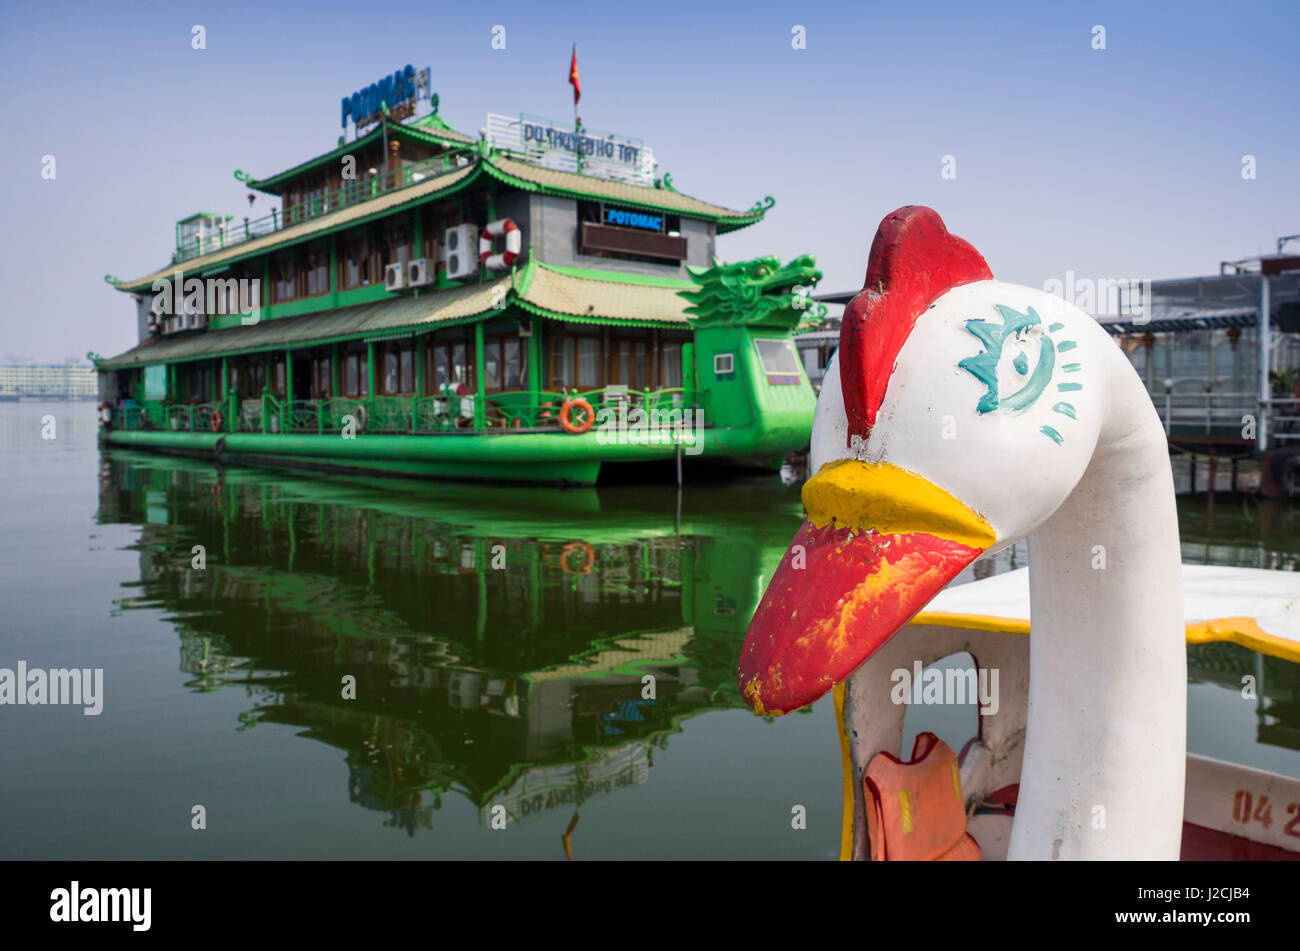 Vietnam, Hanoi. Tay Ho, West Lake, floating restaurant and swan boats Stock Photo